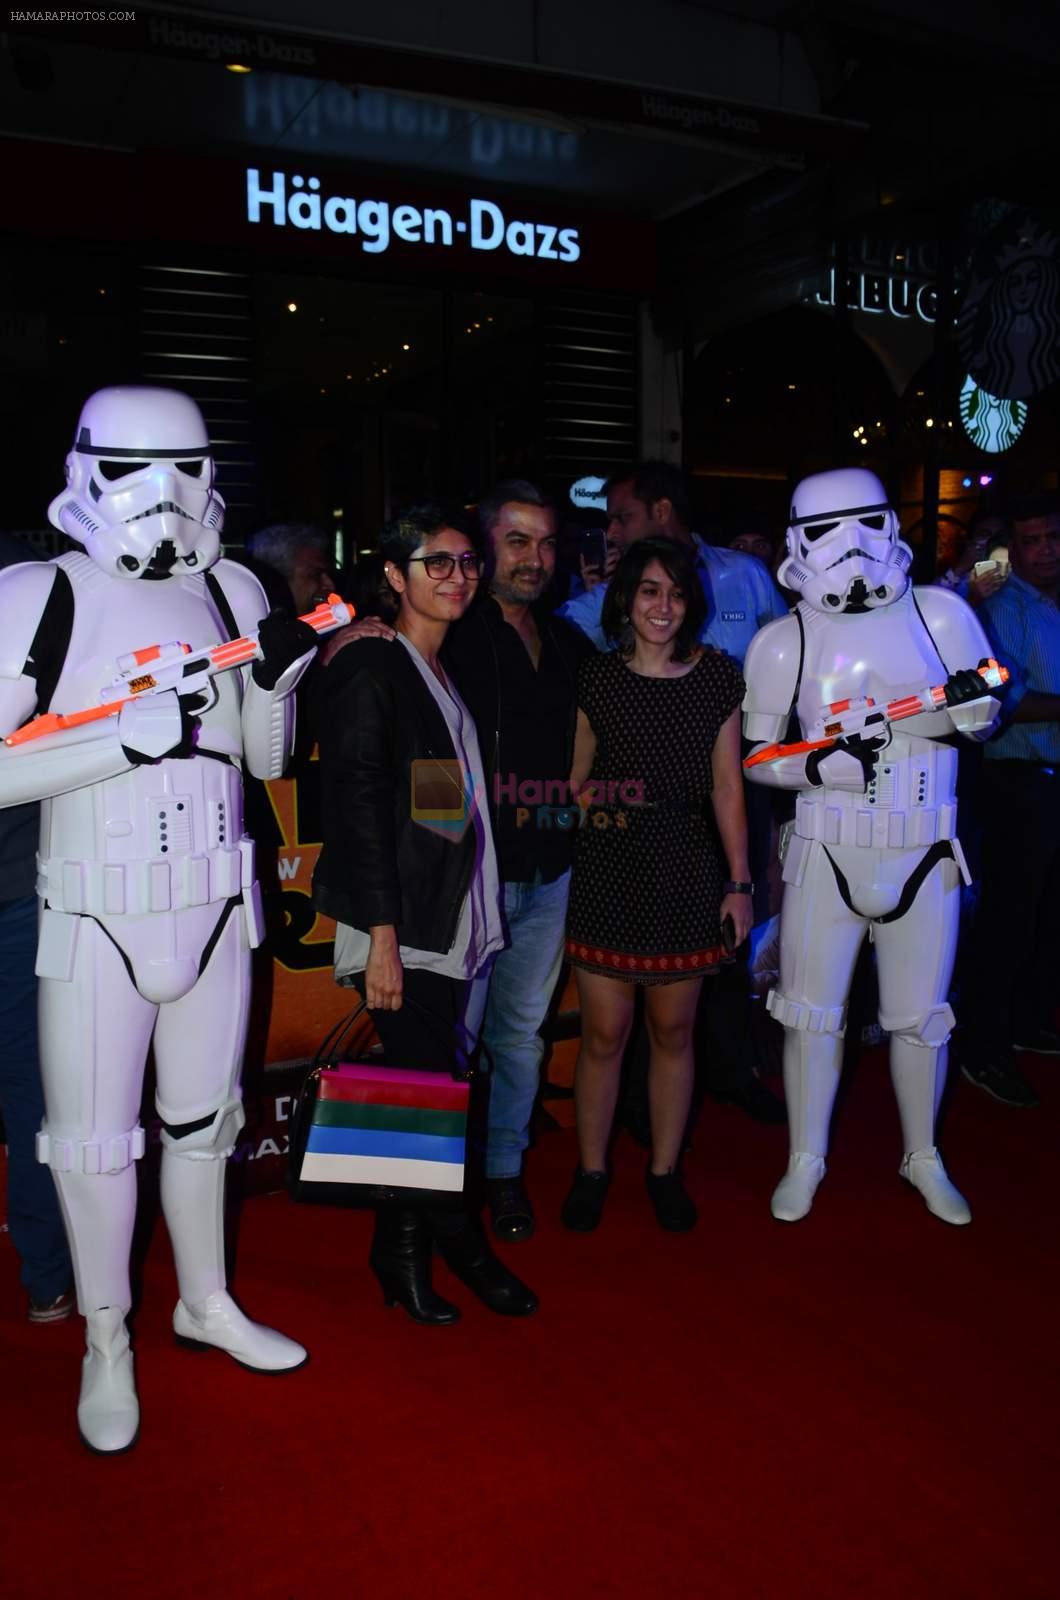 Aamir Khan, Kiran Rao at Star Wars premiere on 23rd Dec 2015